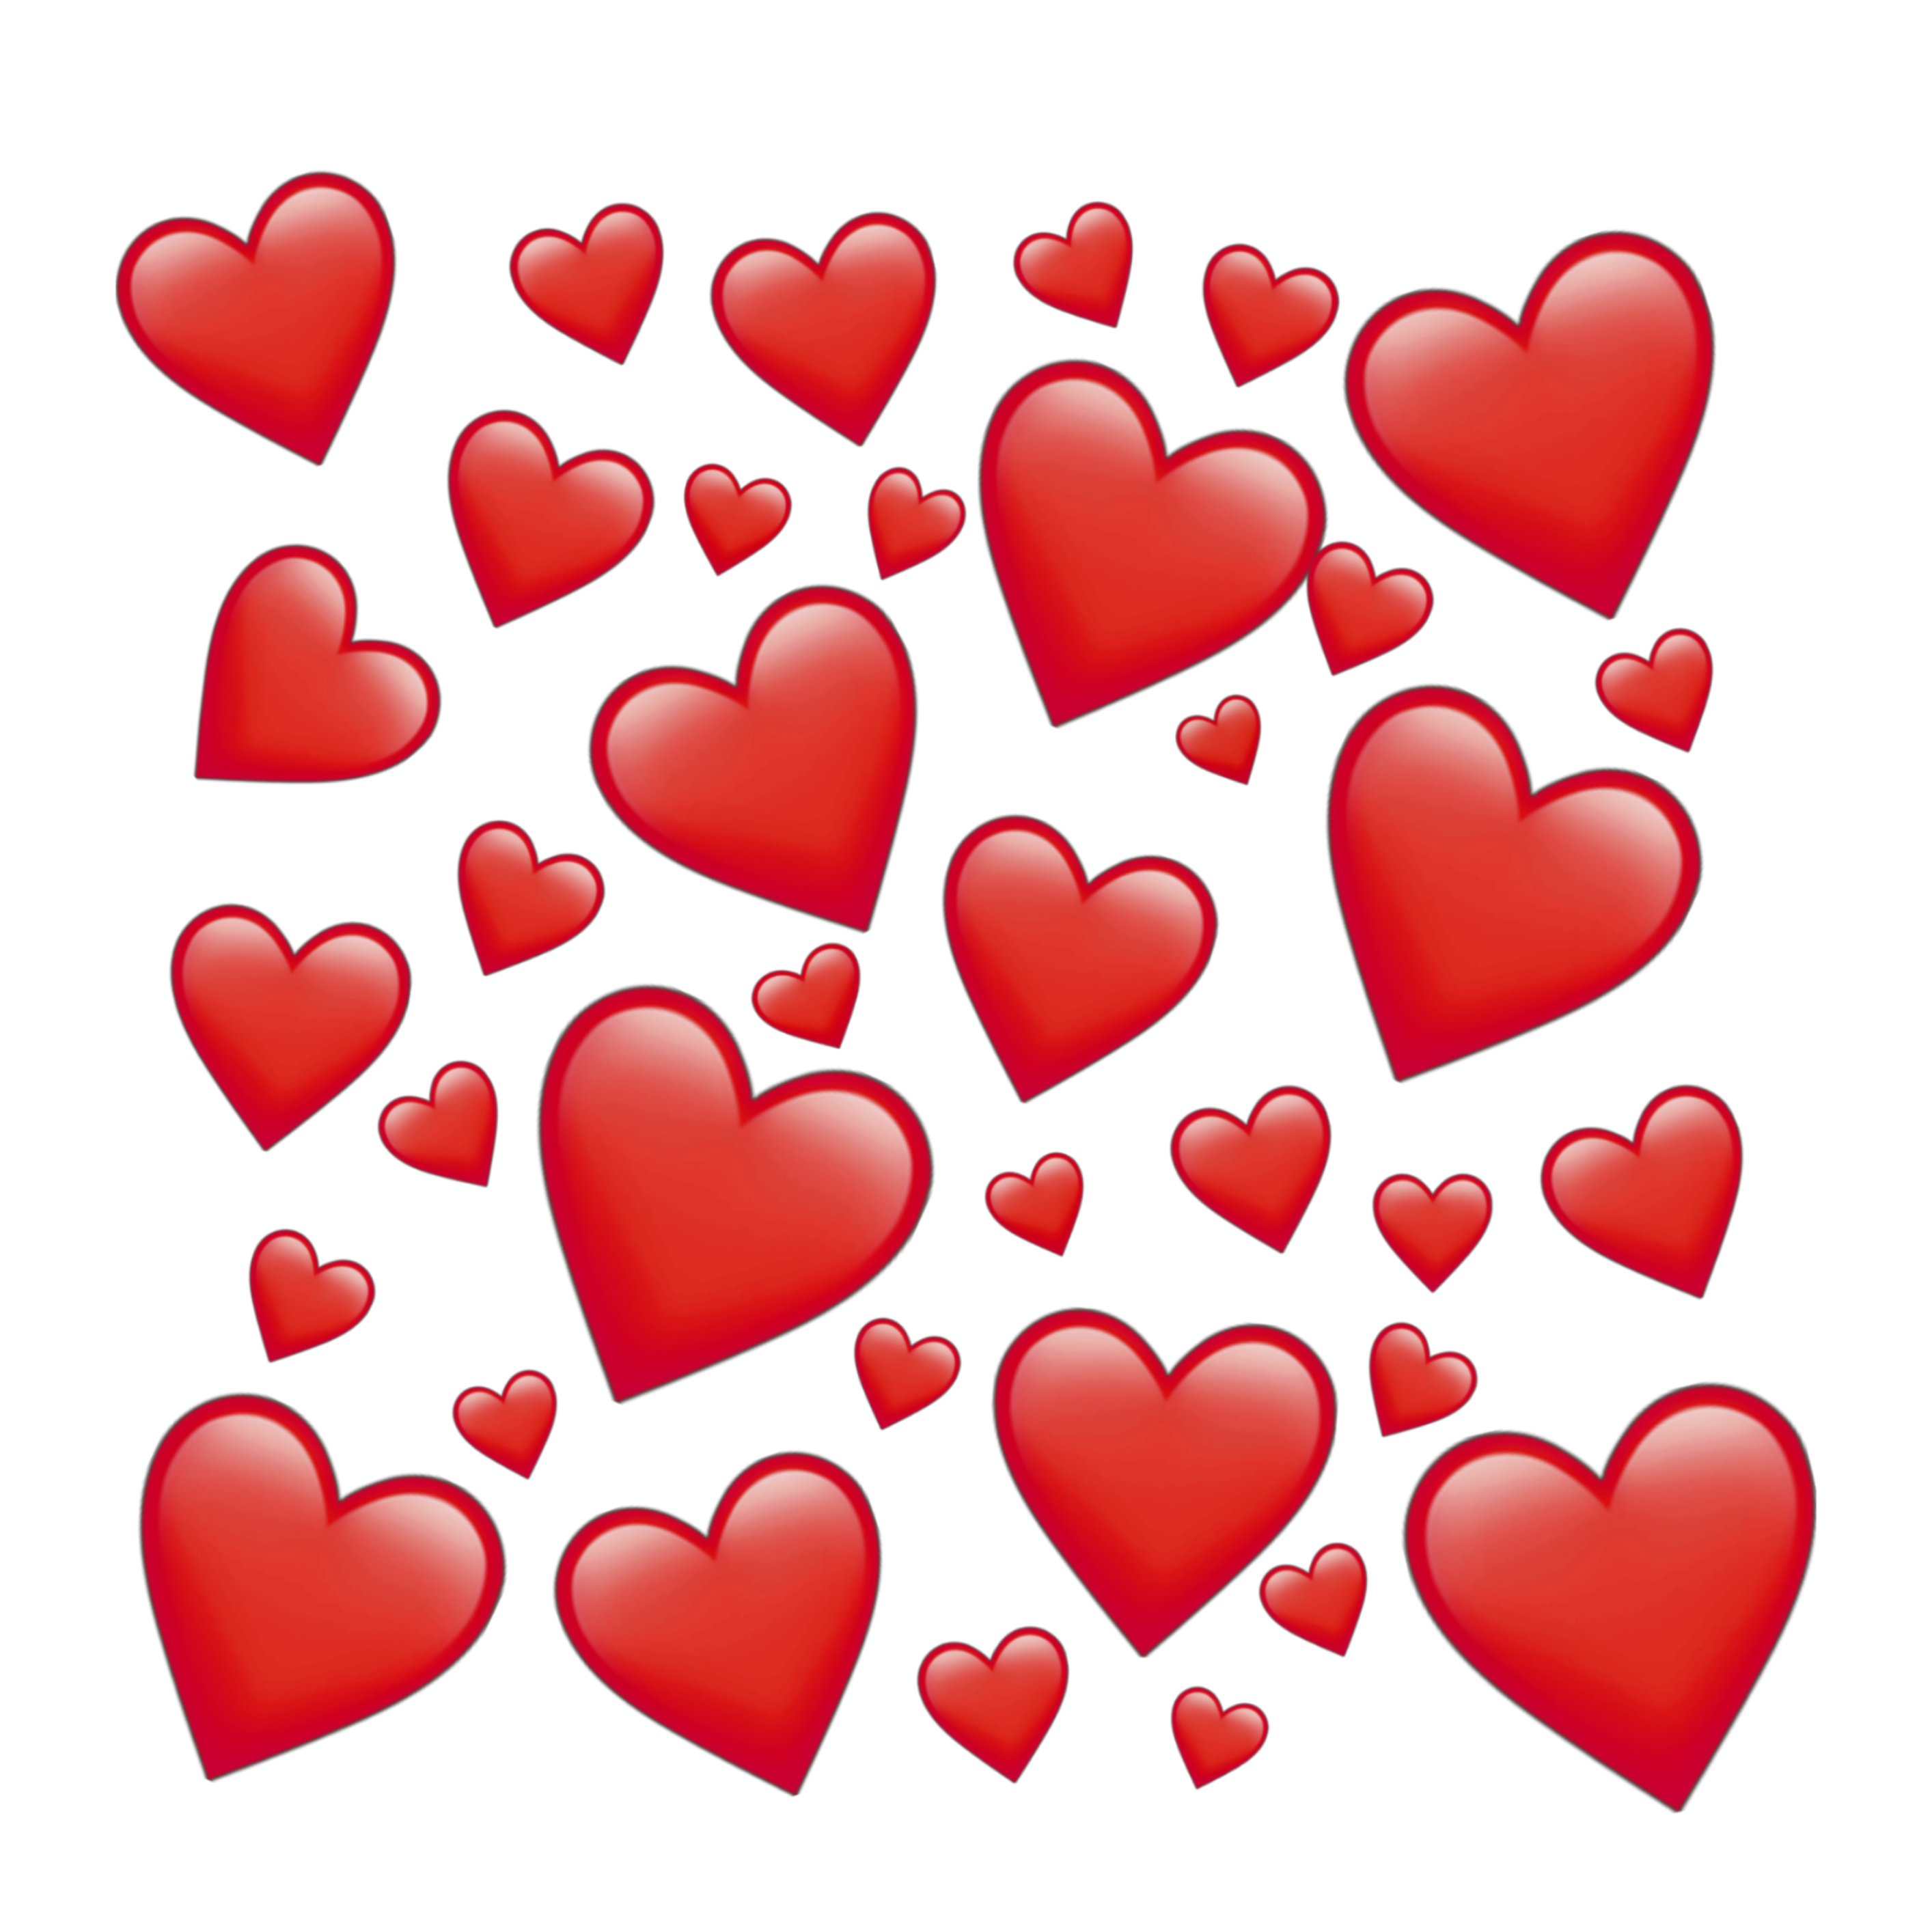 emoji emojis tumblr instagram insta aesthetic mood cute... - Instagram Heart Emoji